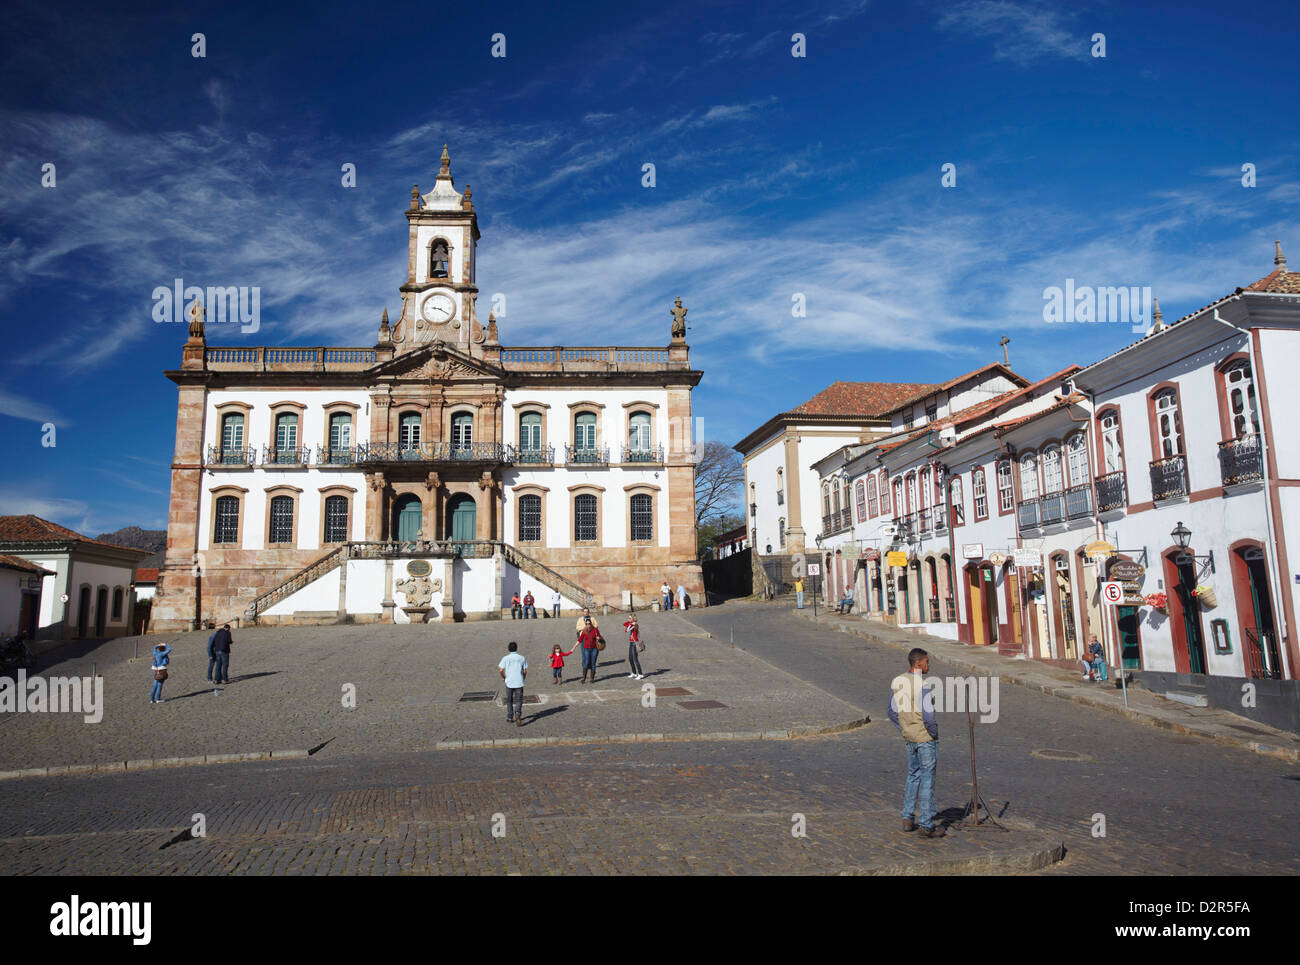 Museu da Inconfidencia et Praça Tiradentes, Ouro Preto, UNESCO World Heritage Site, Minas Gerais, Brésil, Amérique du Sud Banque D'Images